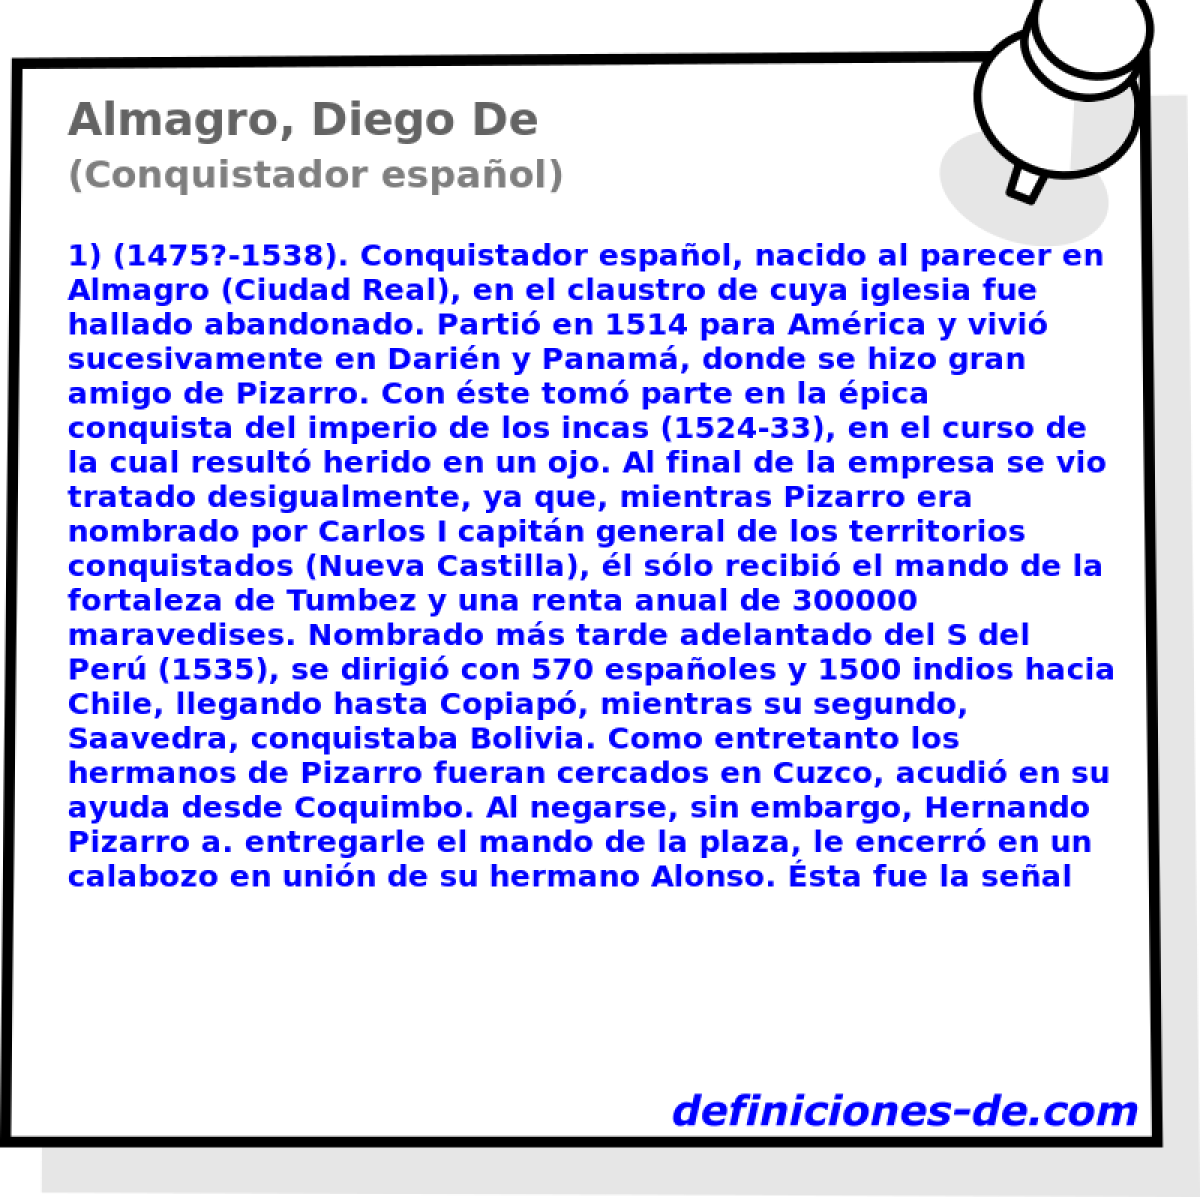 Almagro, Diego De (Conquistador espaol)